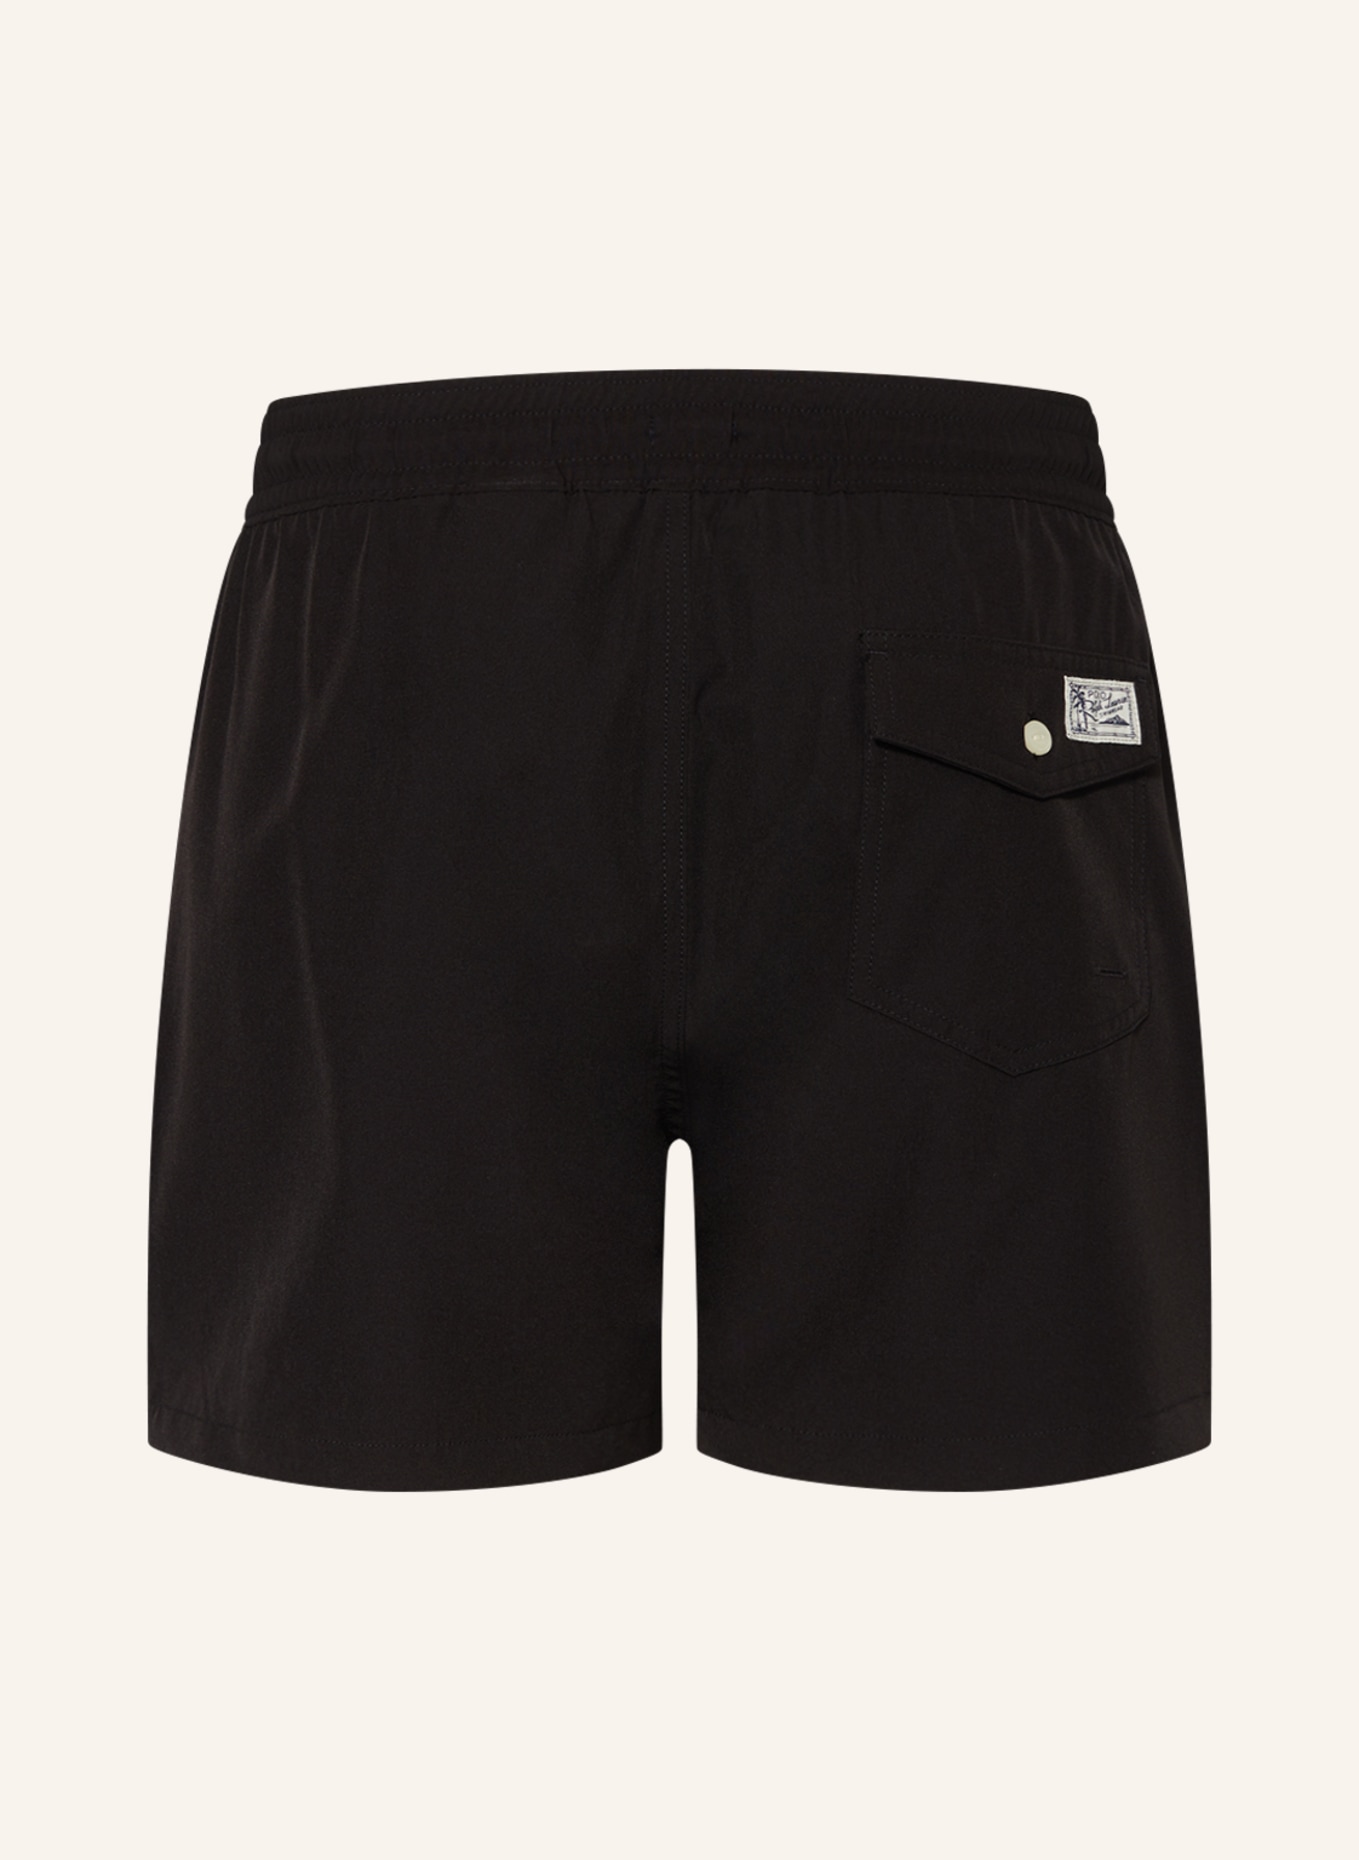 POLO RALPH LAUREN Swim shorts, Color: BLACK (Image 2)